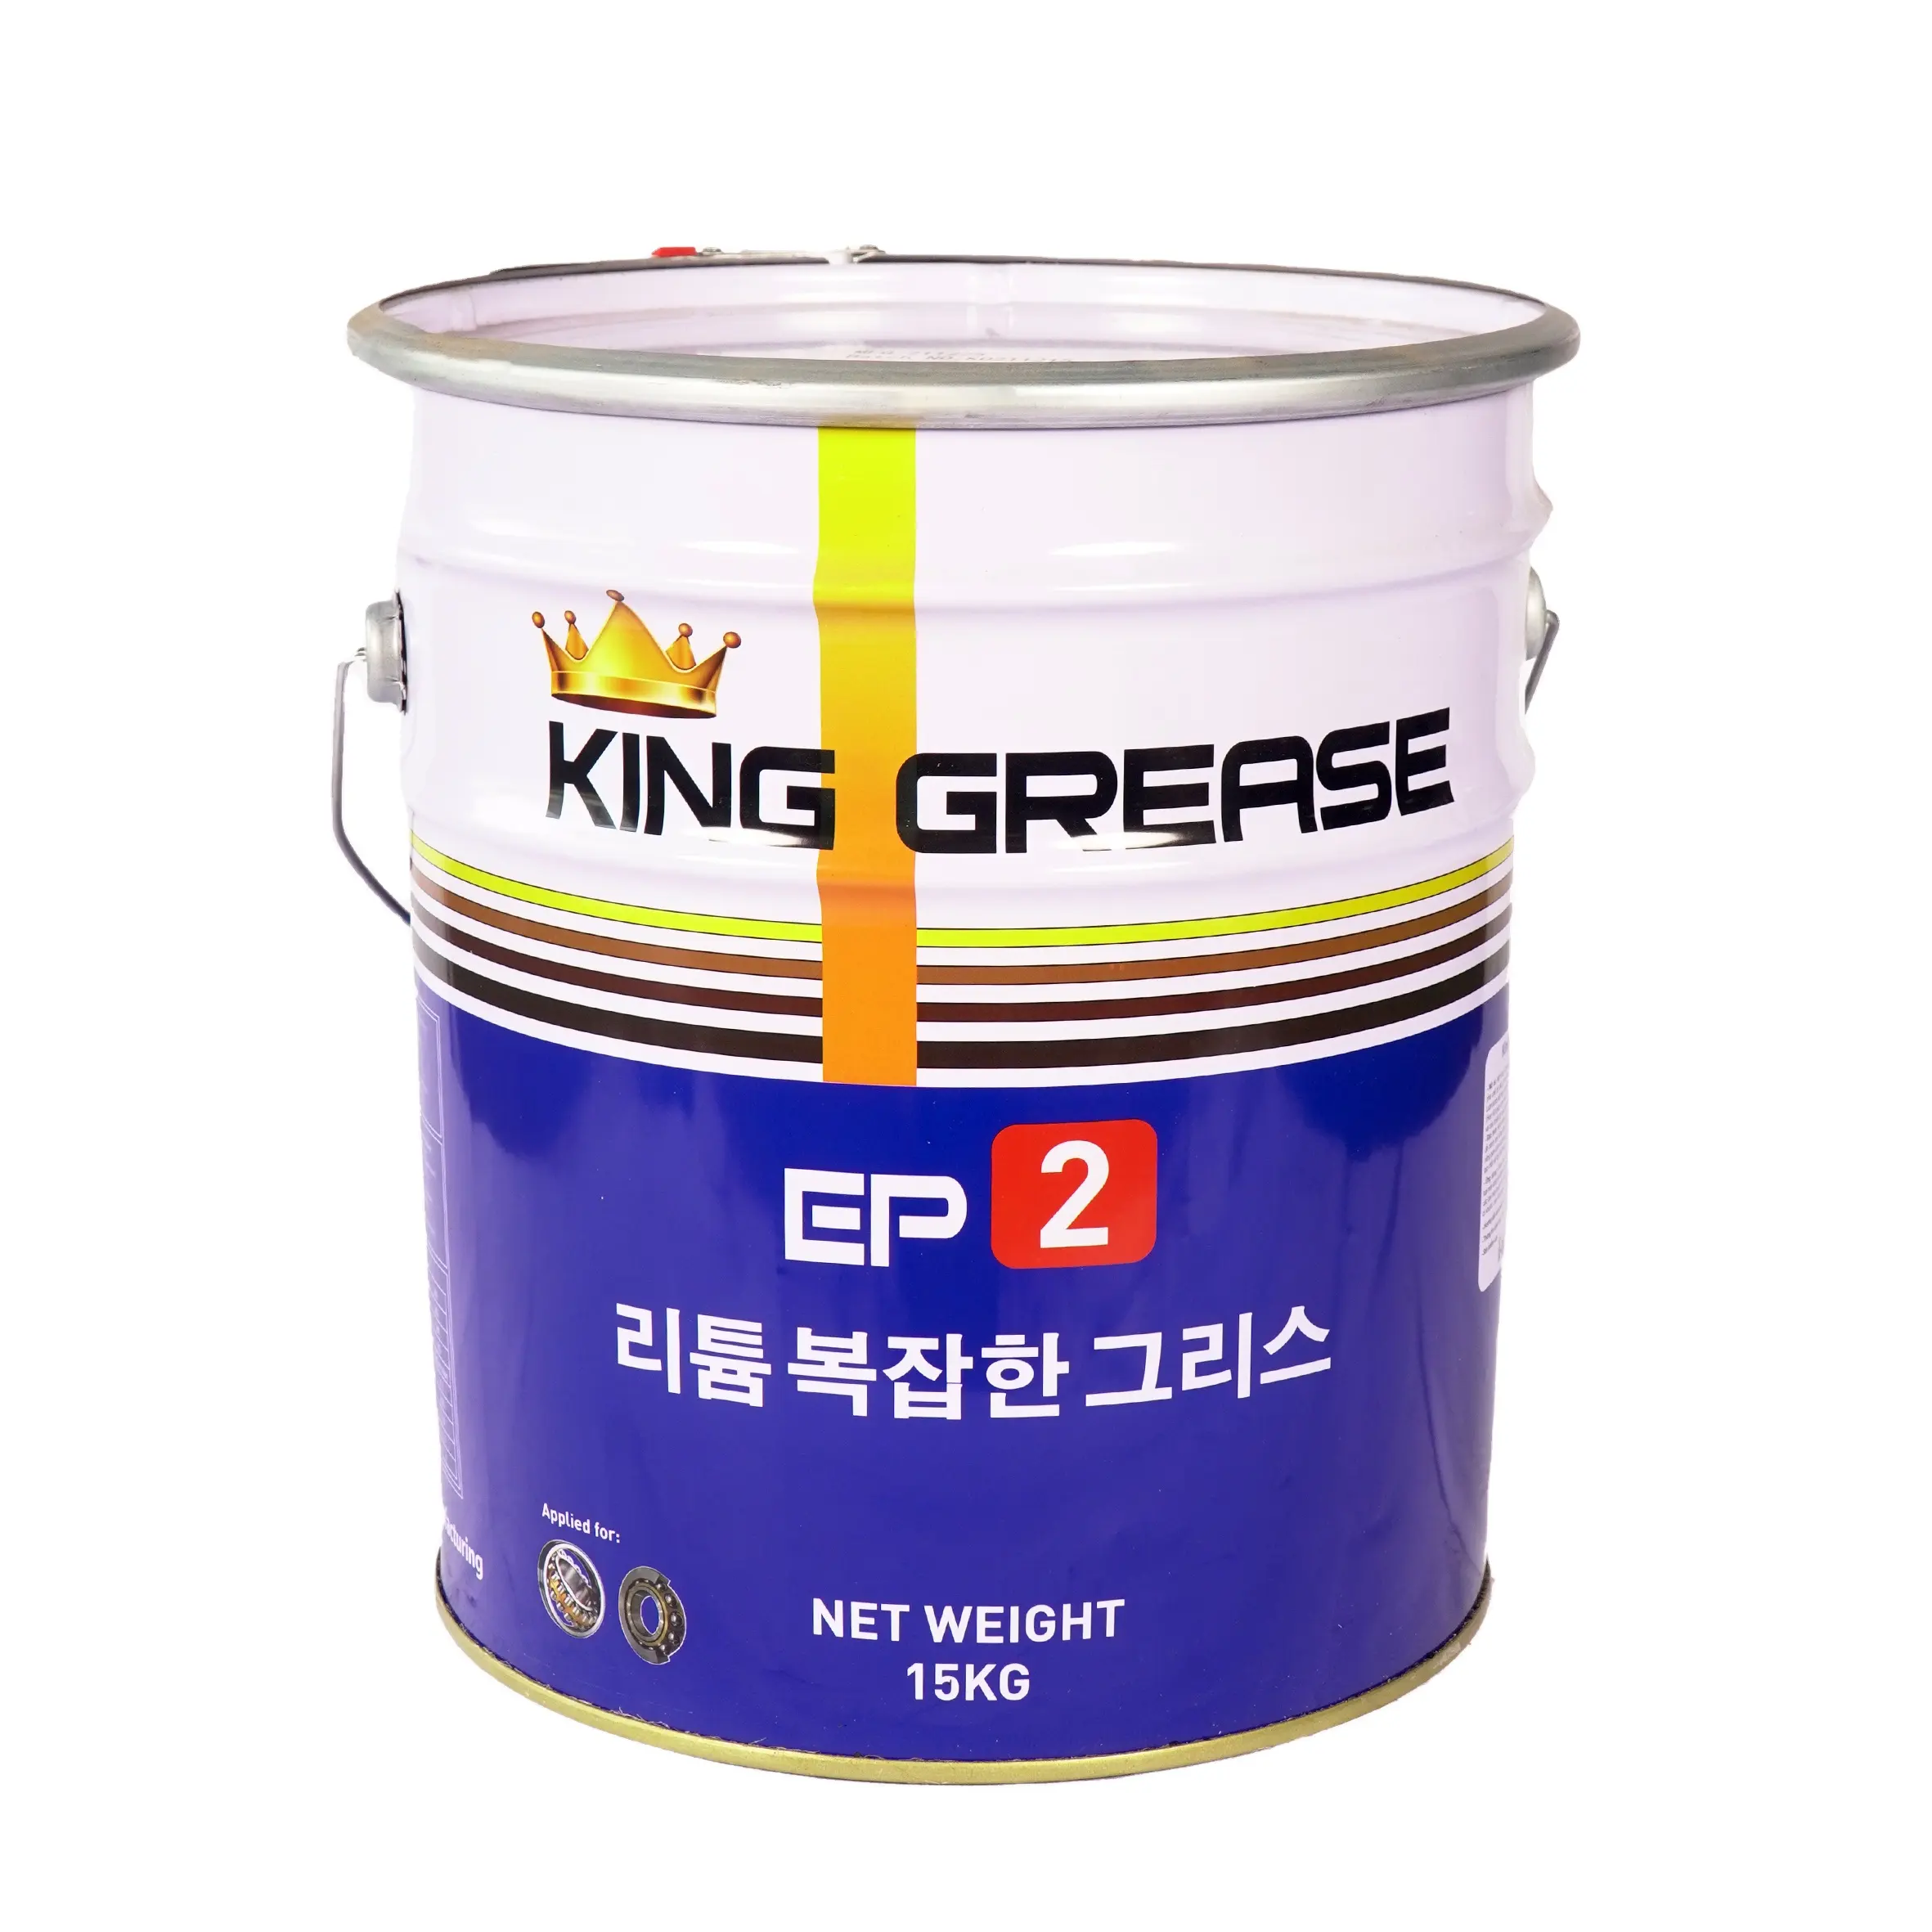 Usine KING GREASE EP2 LITHIUM au Vietnam, anti joncs et lubrifiant OEM disponible pour les roulements lourds.